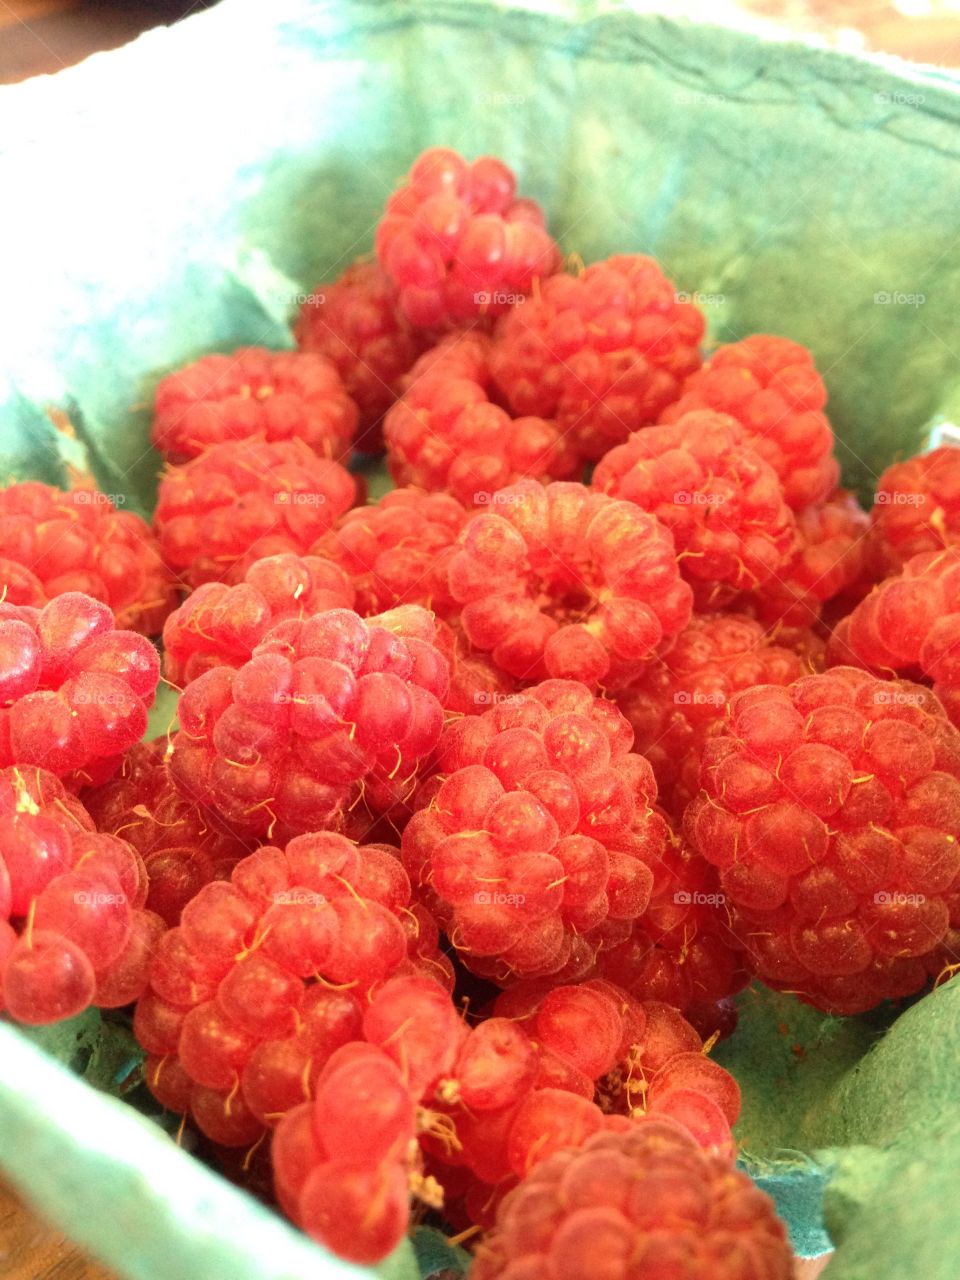 Local raspberries 